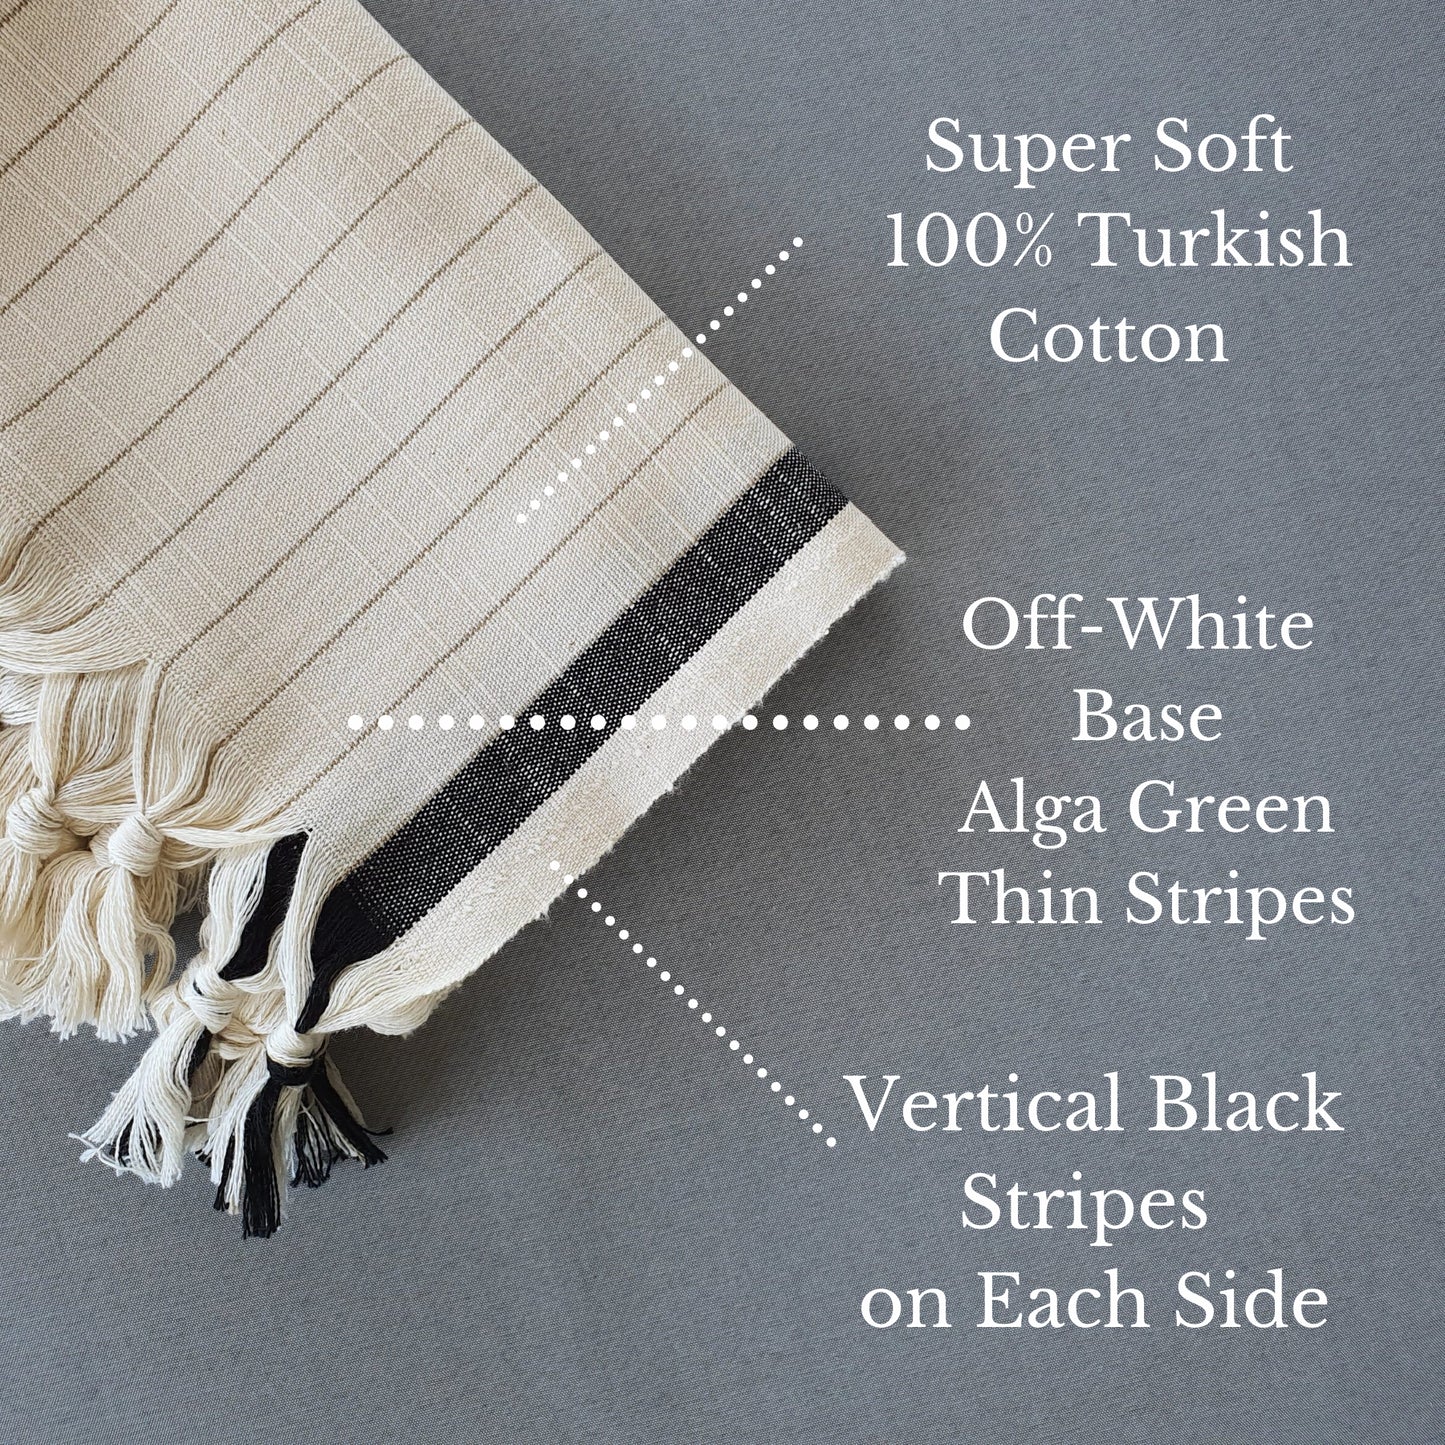 The Loomia | Silvia 100% Turkish Cotton Hand Towel